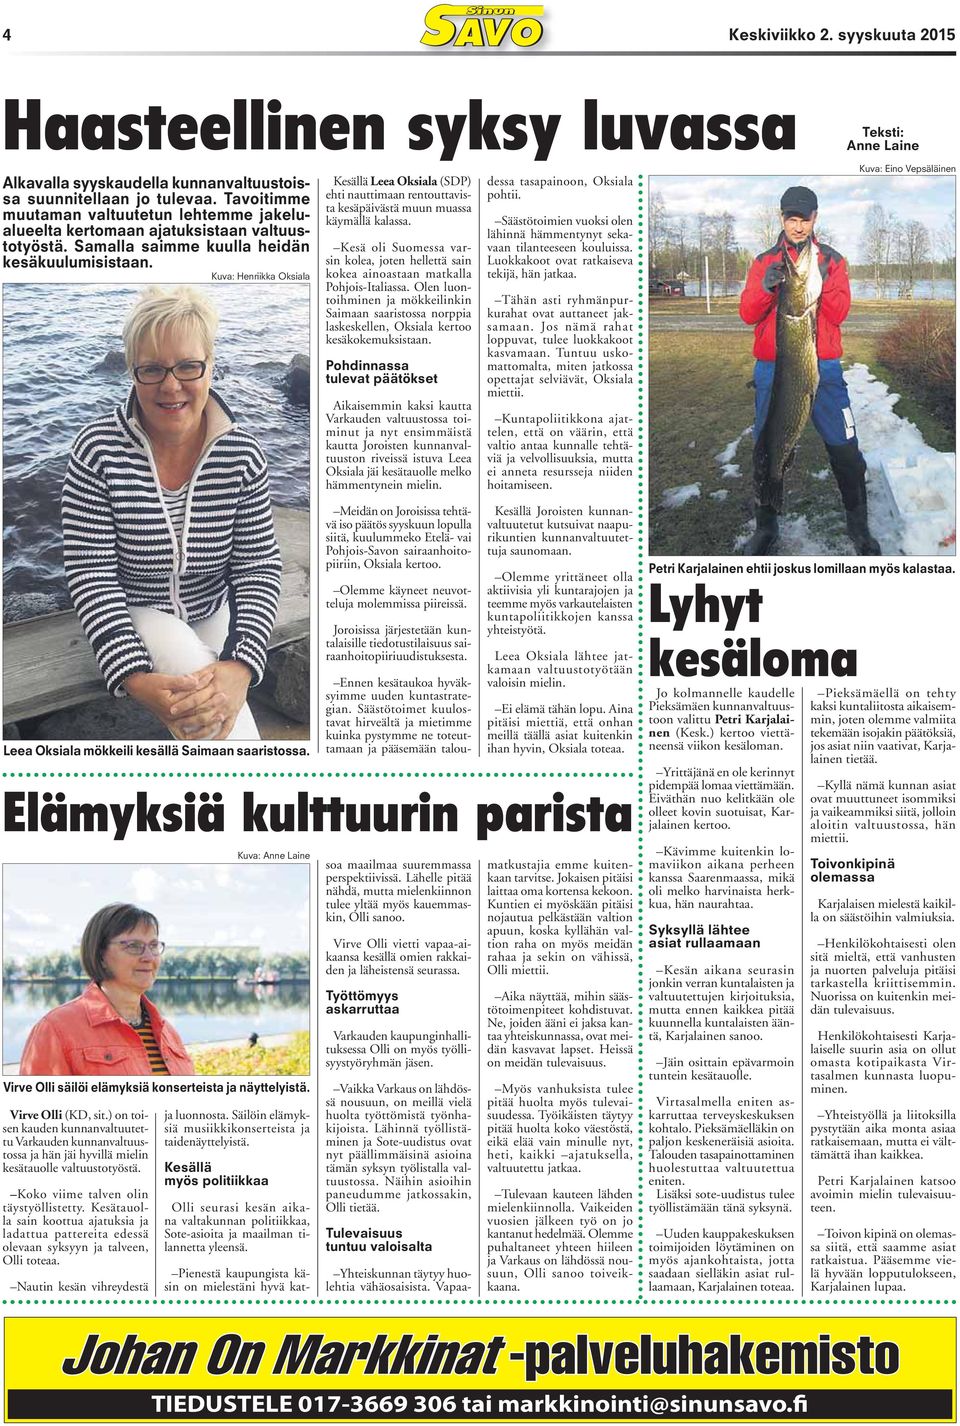 Kuva: Henriikka Oksiala Kesällä Leea Oksiala (SDP) ehti nauttimaan rentouttavista kesäpäivästä muun muassa käymällä kalassa.